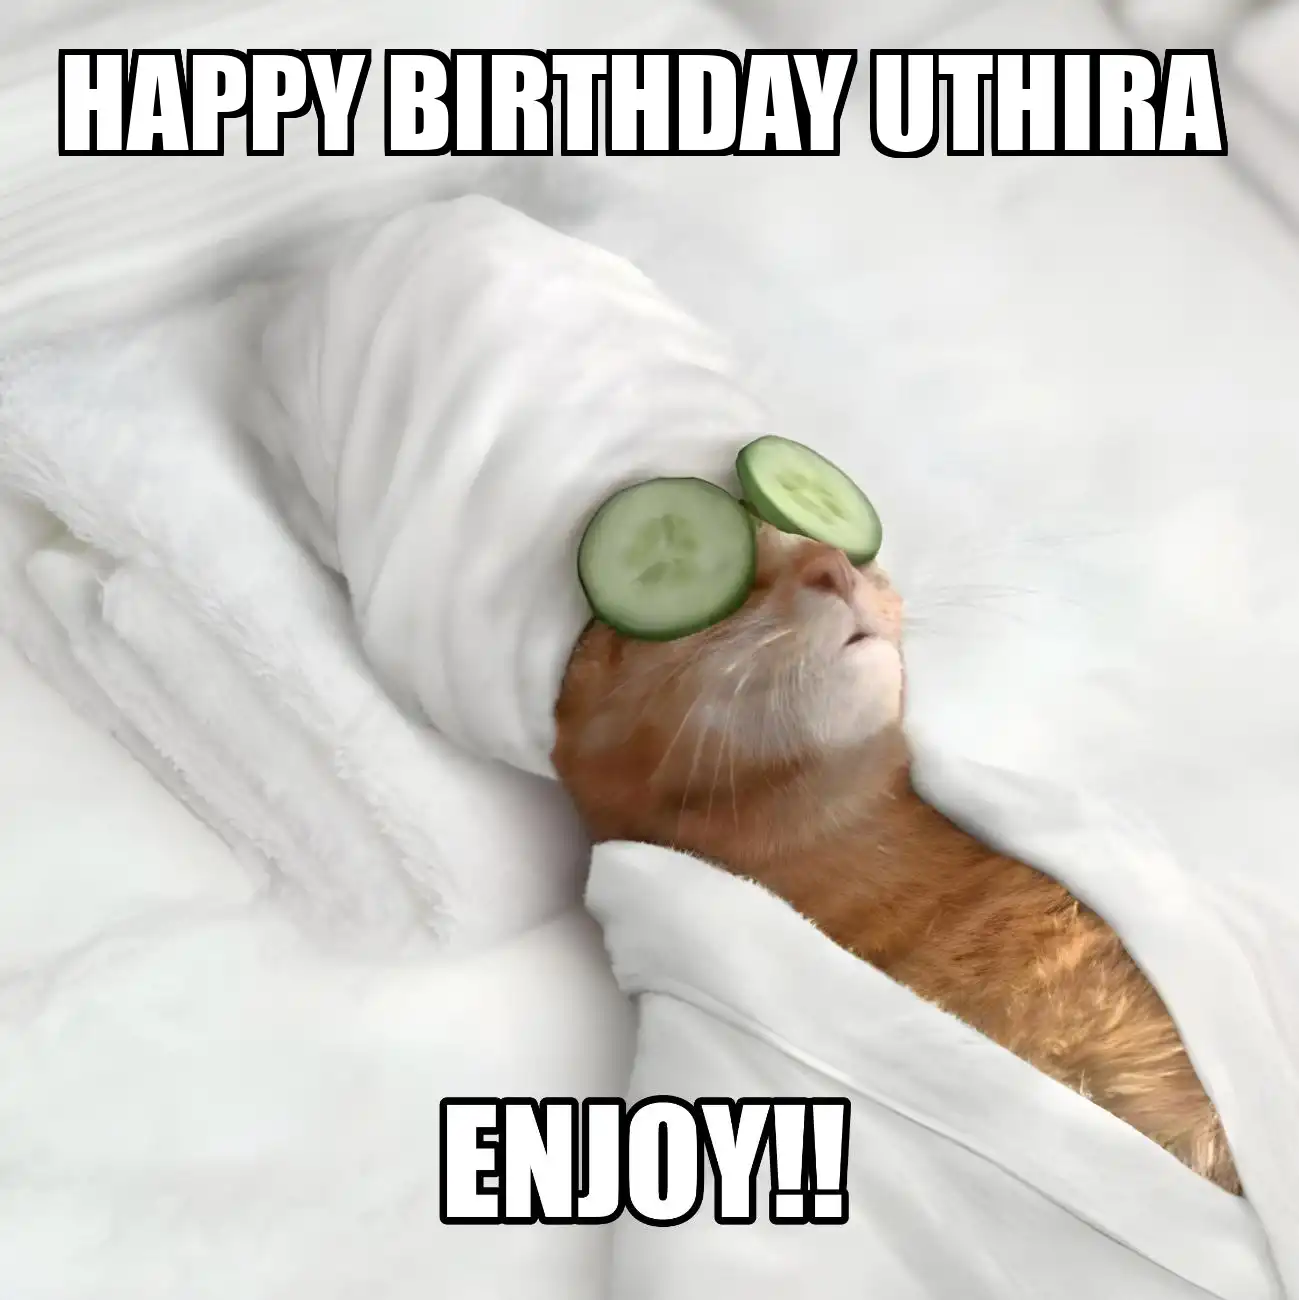 Happy Birthday Uthira Enjoy Cat Meme